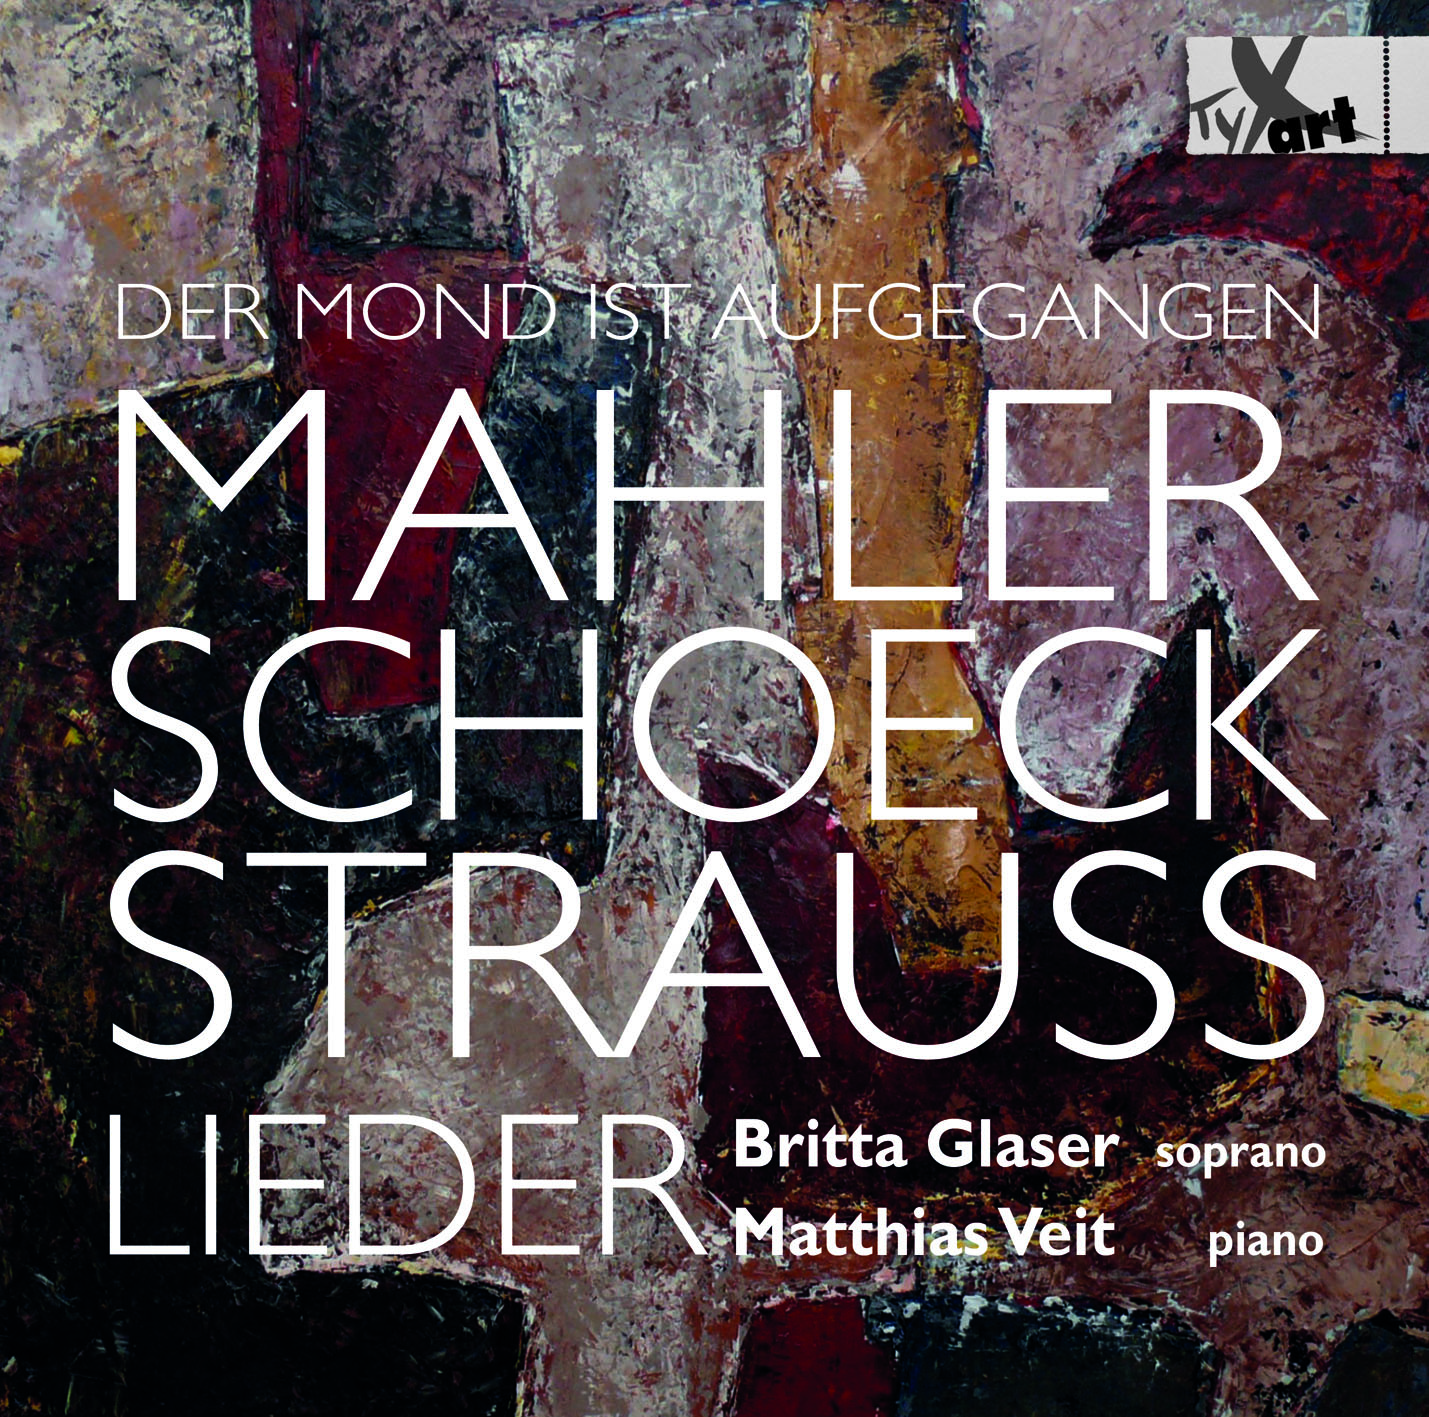 Lieder von Mahler, Schoeck, Straus - Glaser und Veit